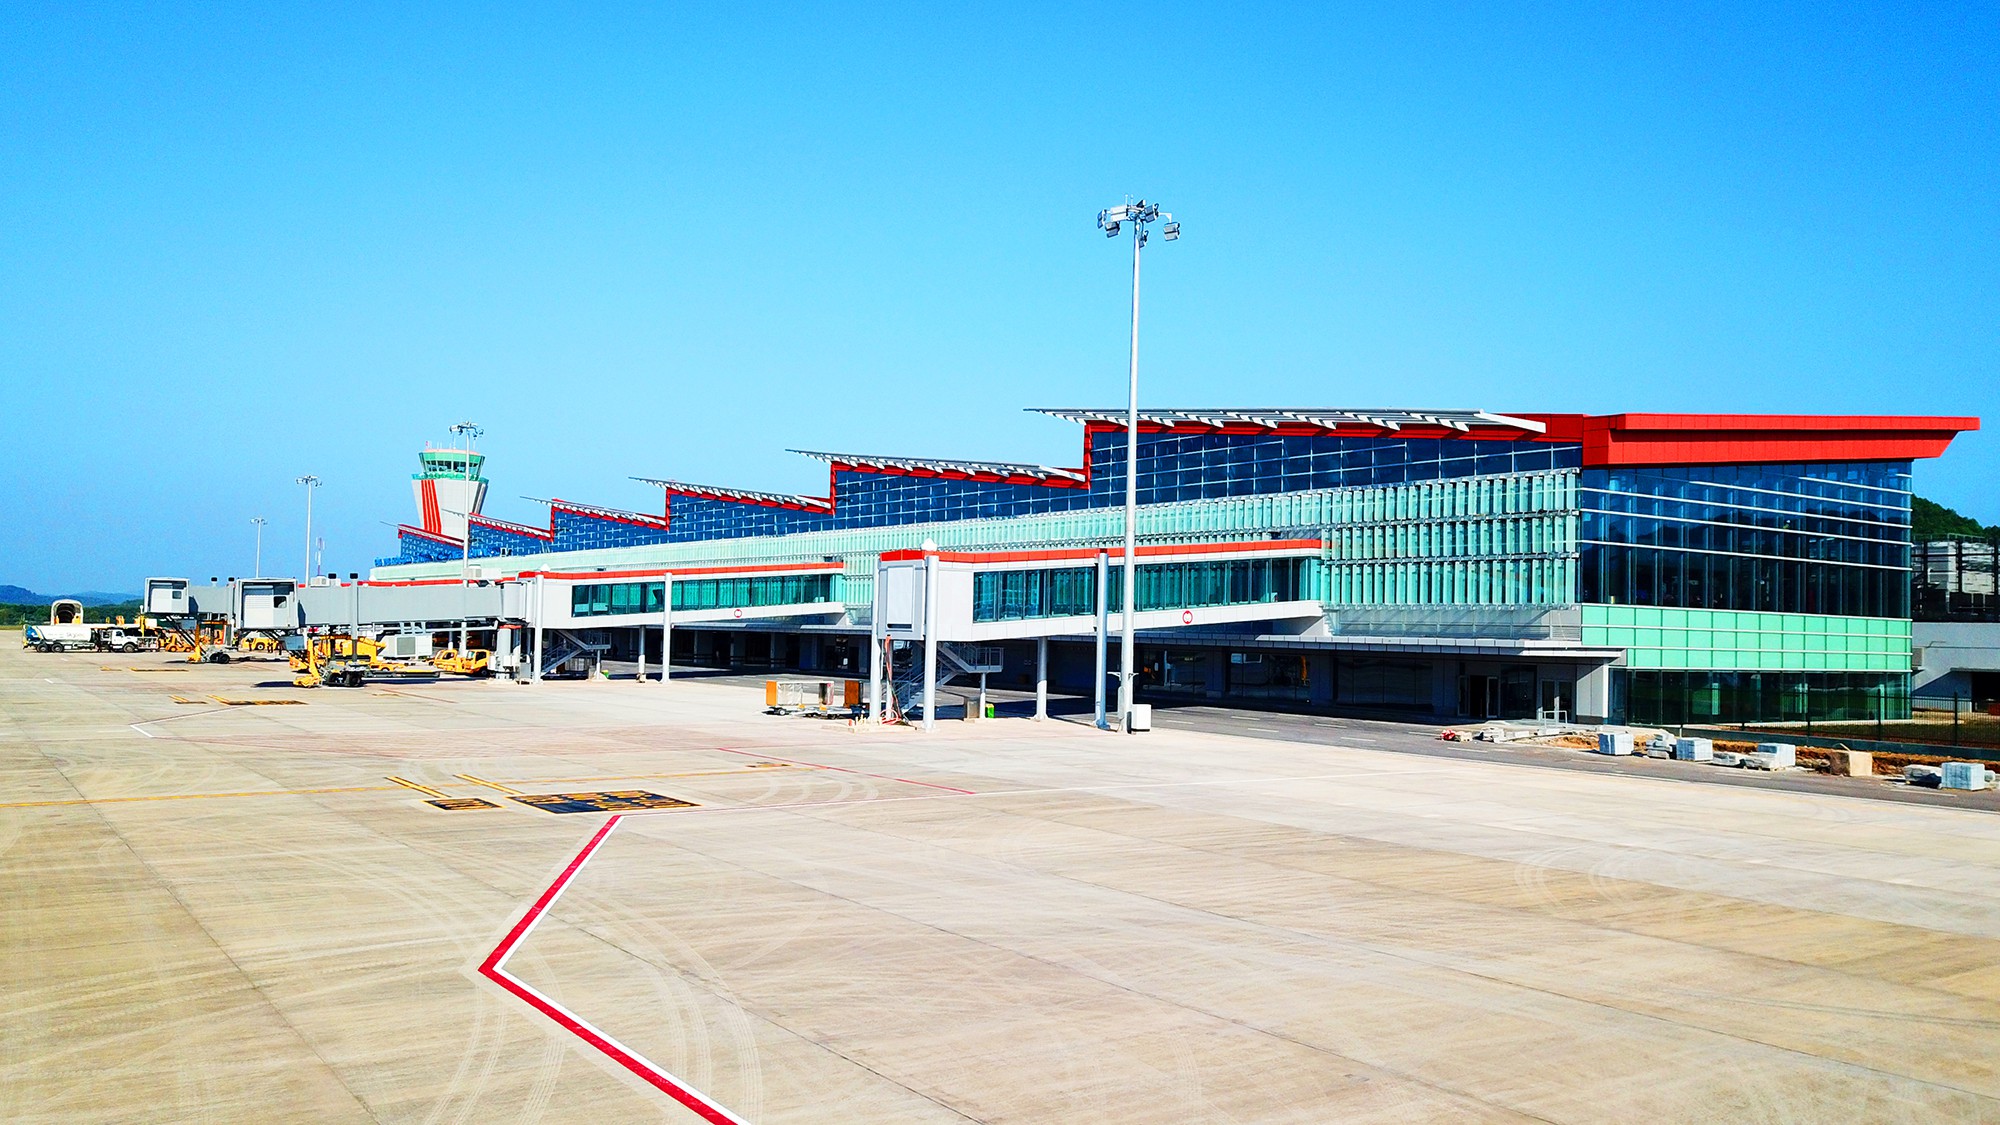 sân bay Vân Đồn